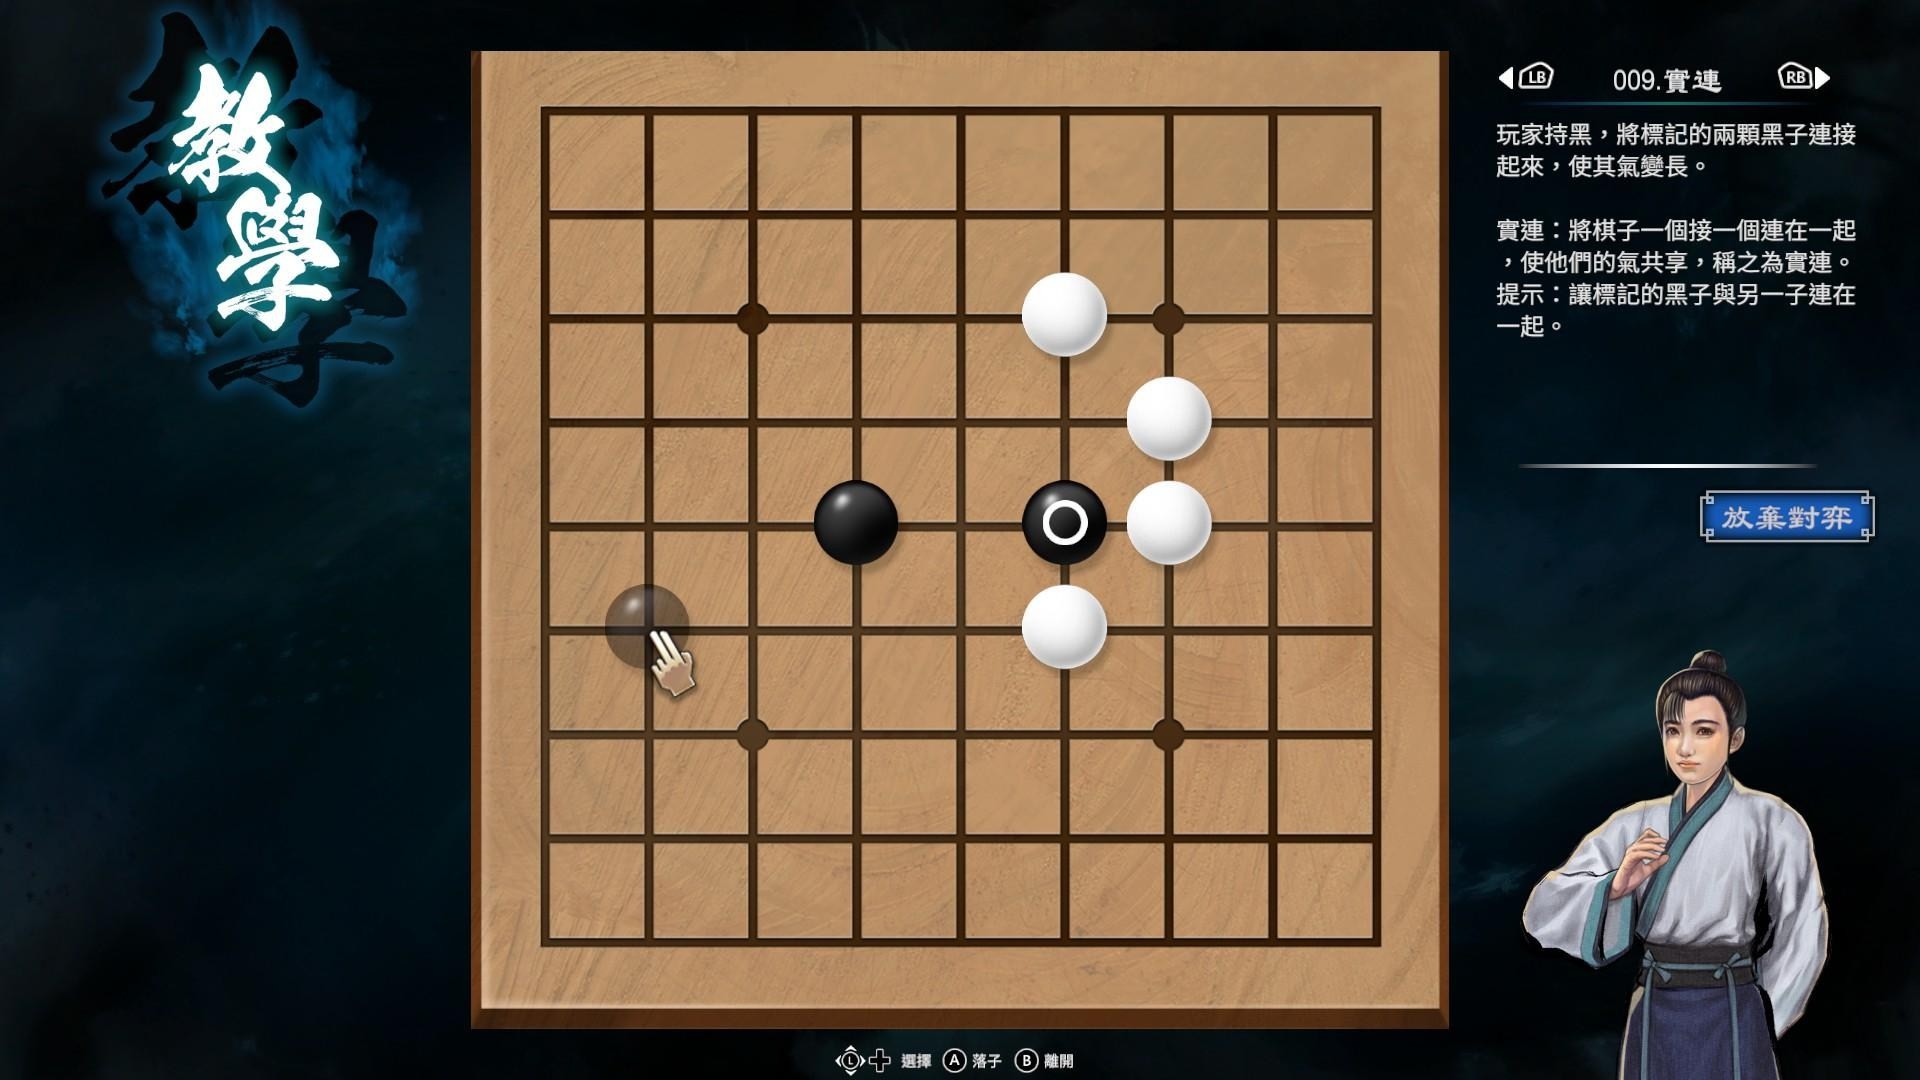 《天命奇御2》圍棋基本概念與棋型解法介紹